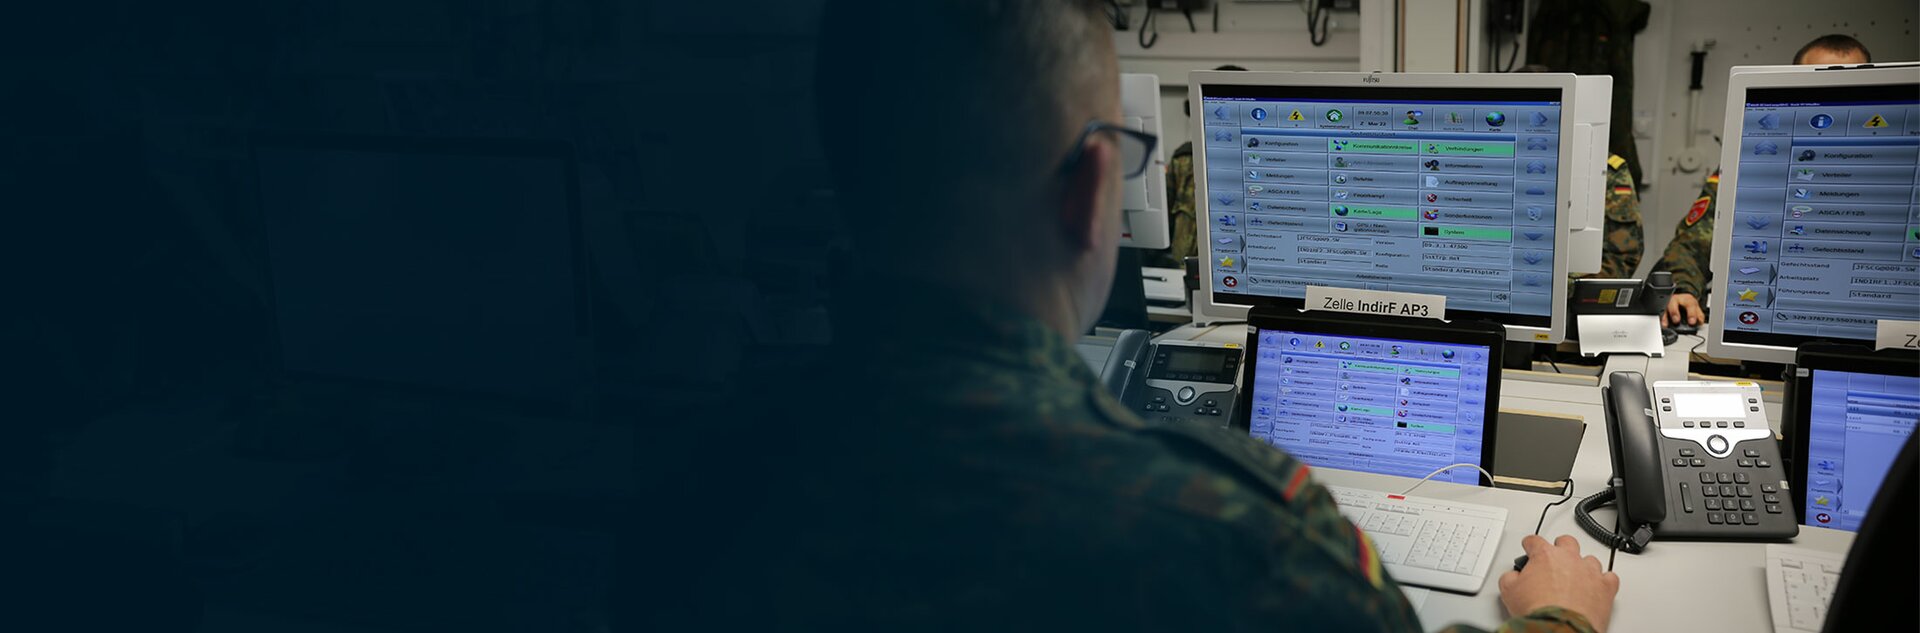 Der Themenbereich Command and Control beinhaltet neben Führungssystemen, Kommunikation und Interoperabilität, auch moderne Gefechtsstände.